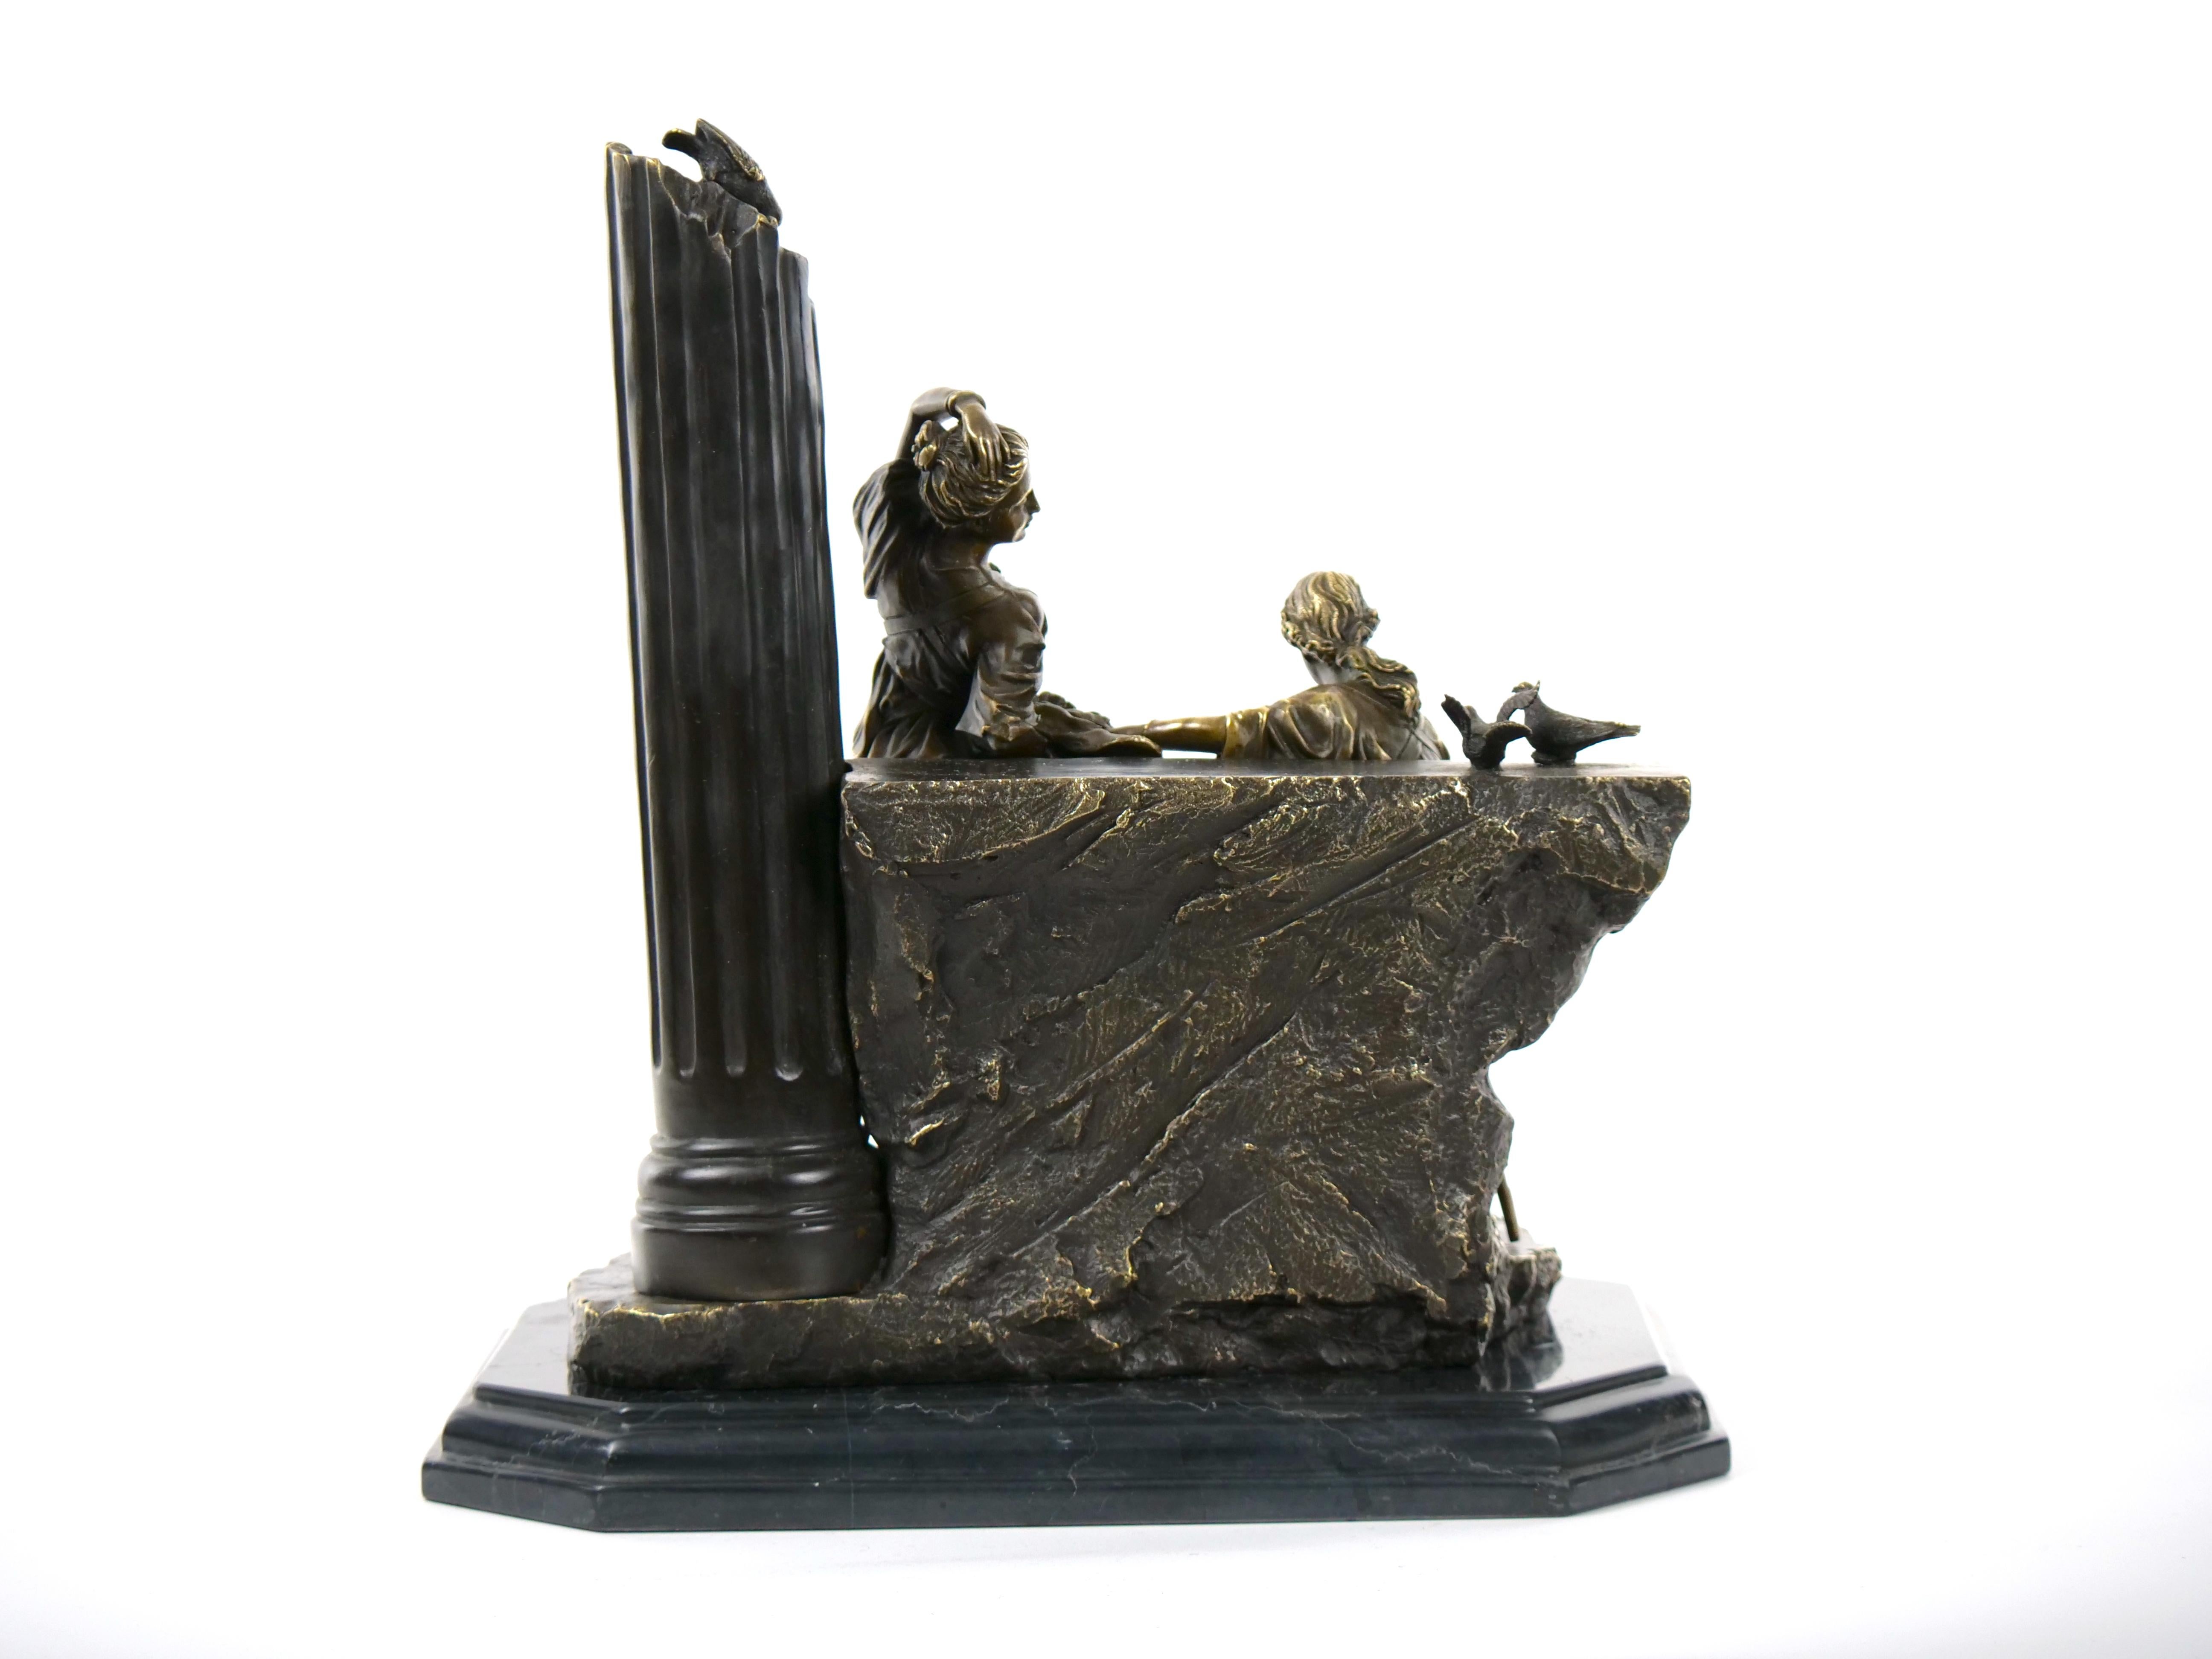 Portuguese Roman Neoclassical Figurative Bronze Sculpture by Miguel Fernando Lopez Aka Milo For Sale